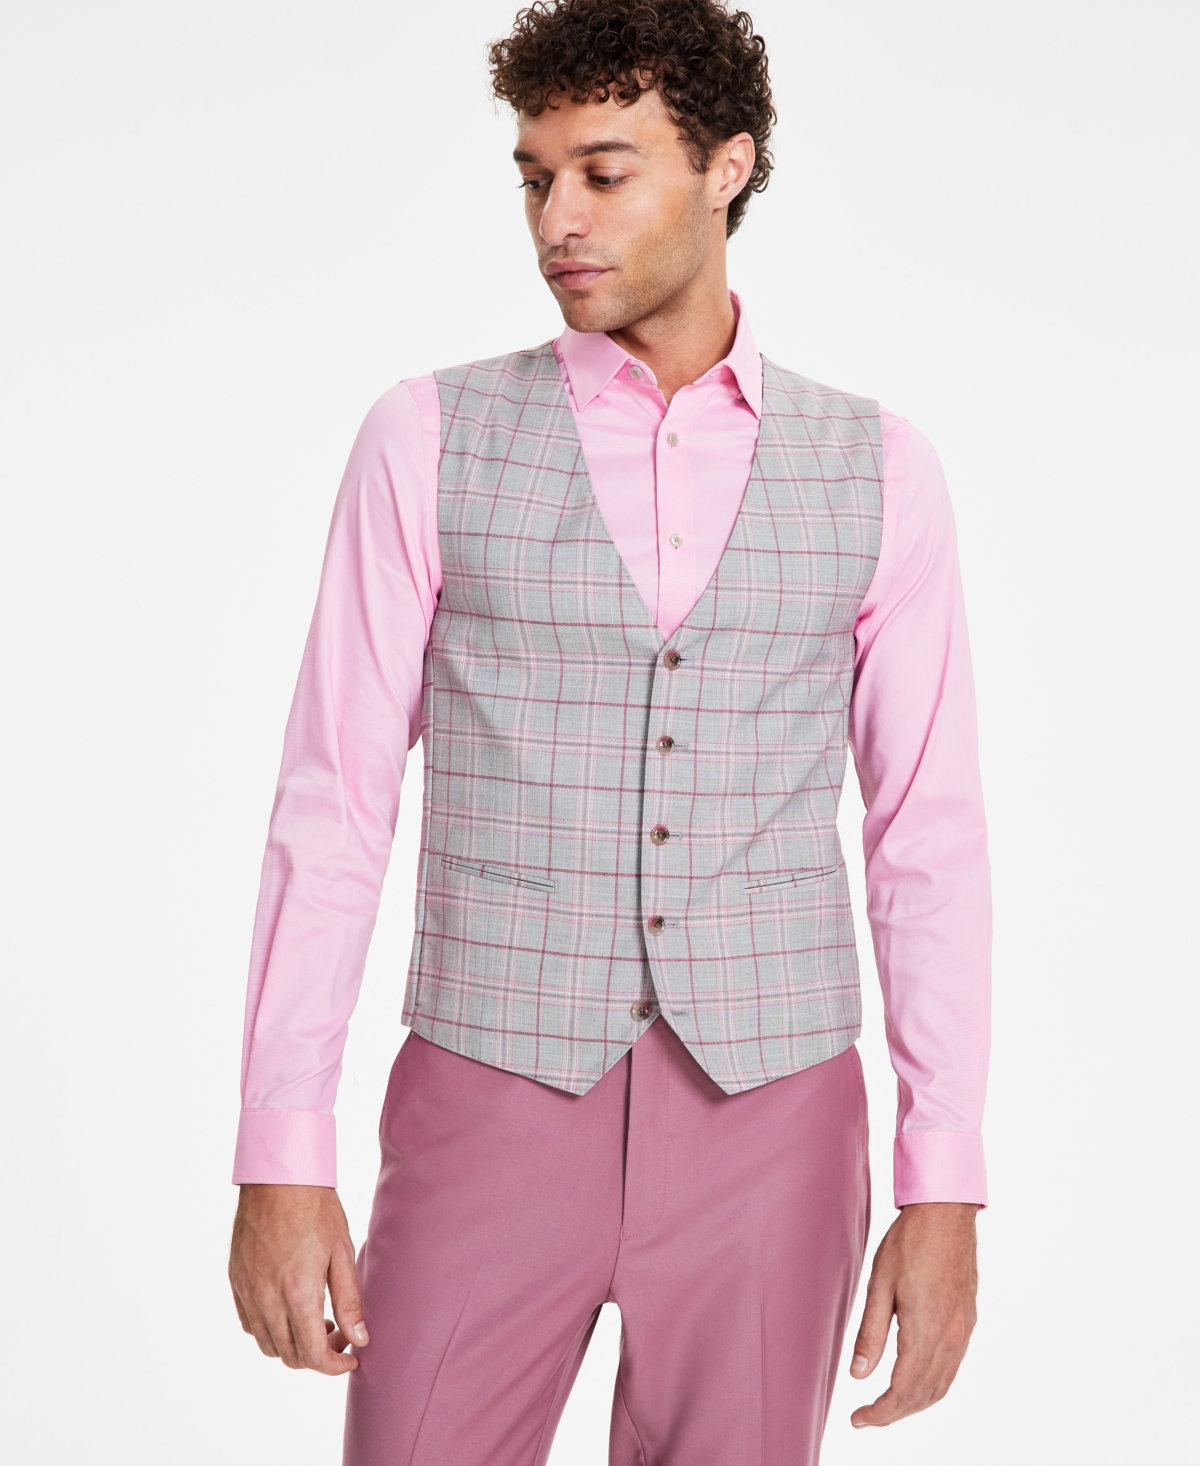 Men's Classic Fit Suit Vest - Light Grey/cranberry Plaid